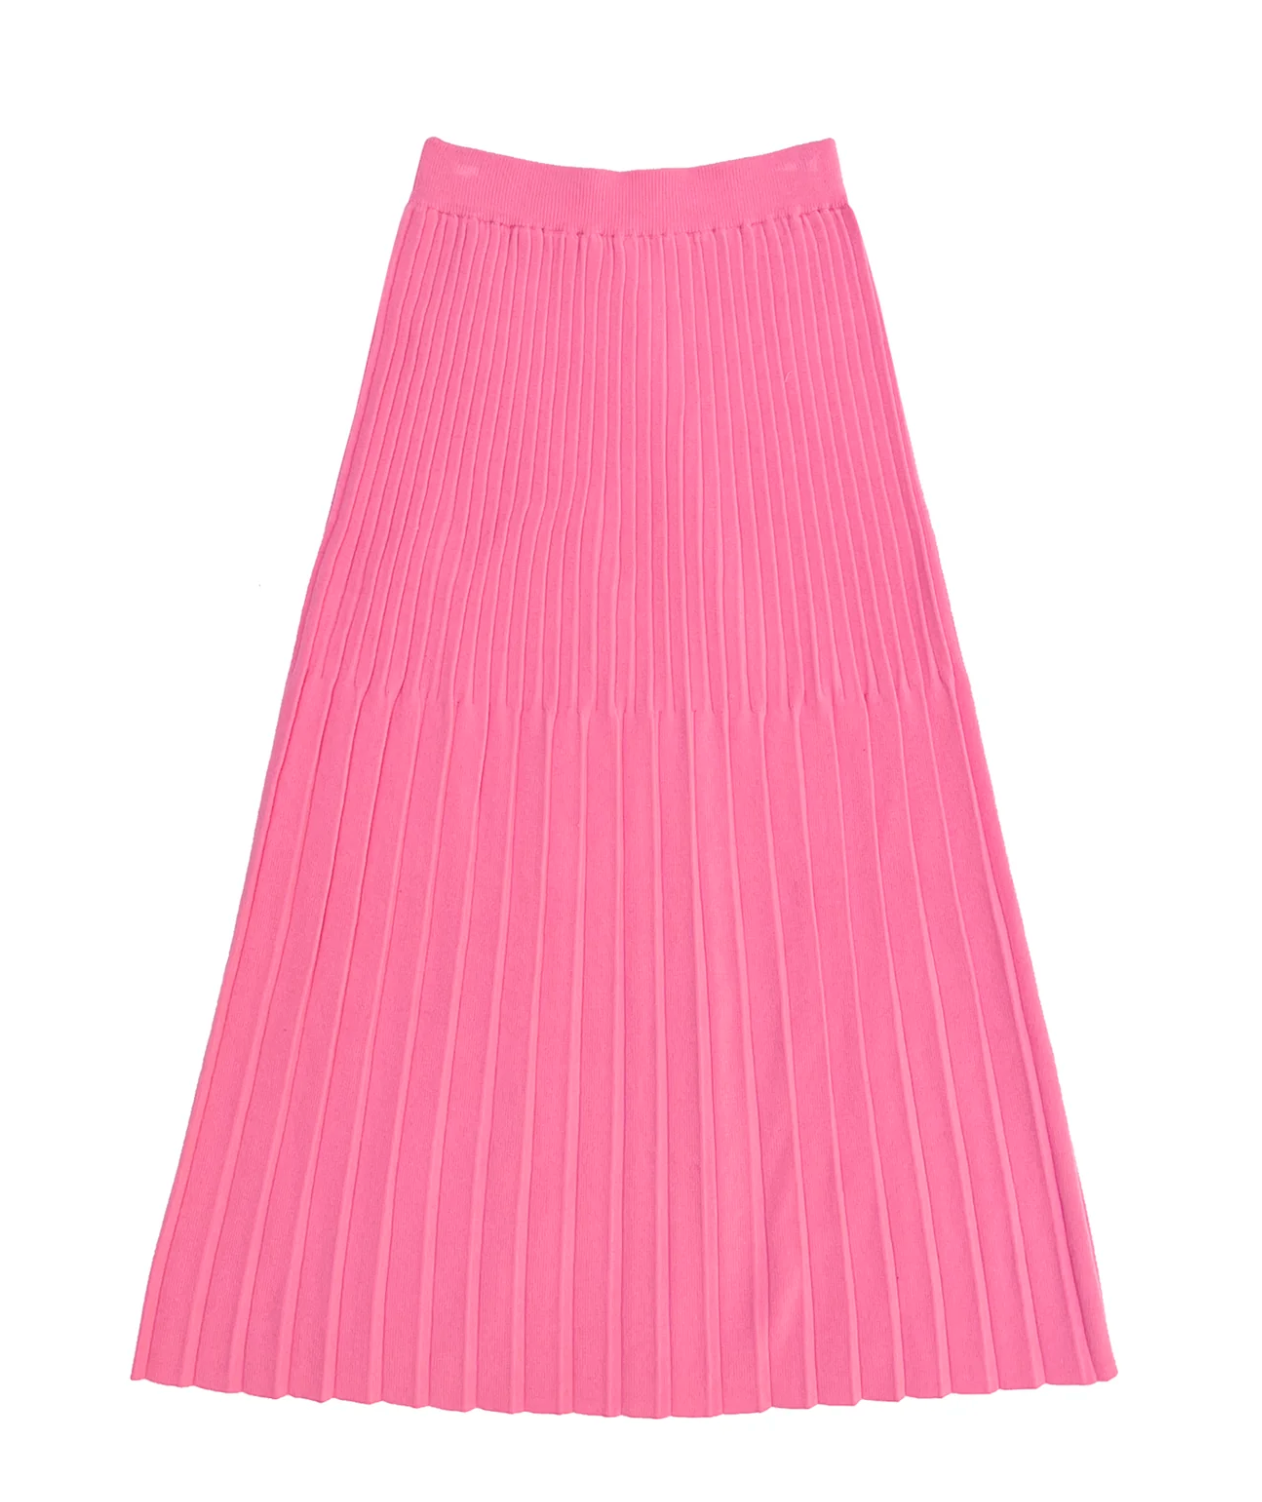 Knit Pleated Skirt // Bubblegum